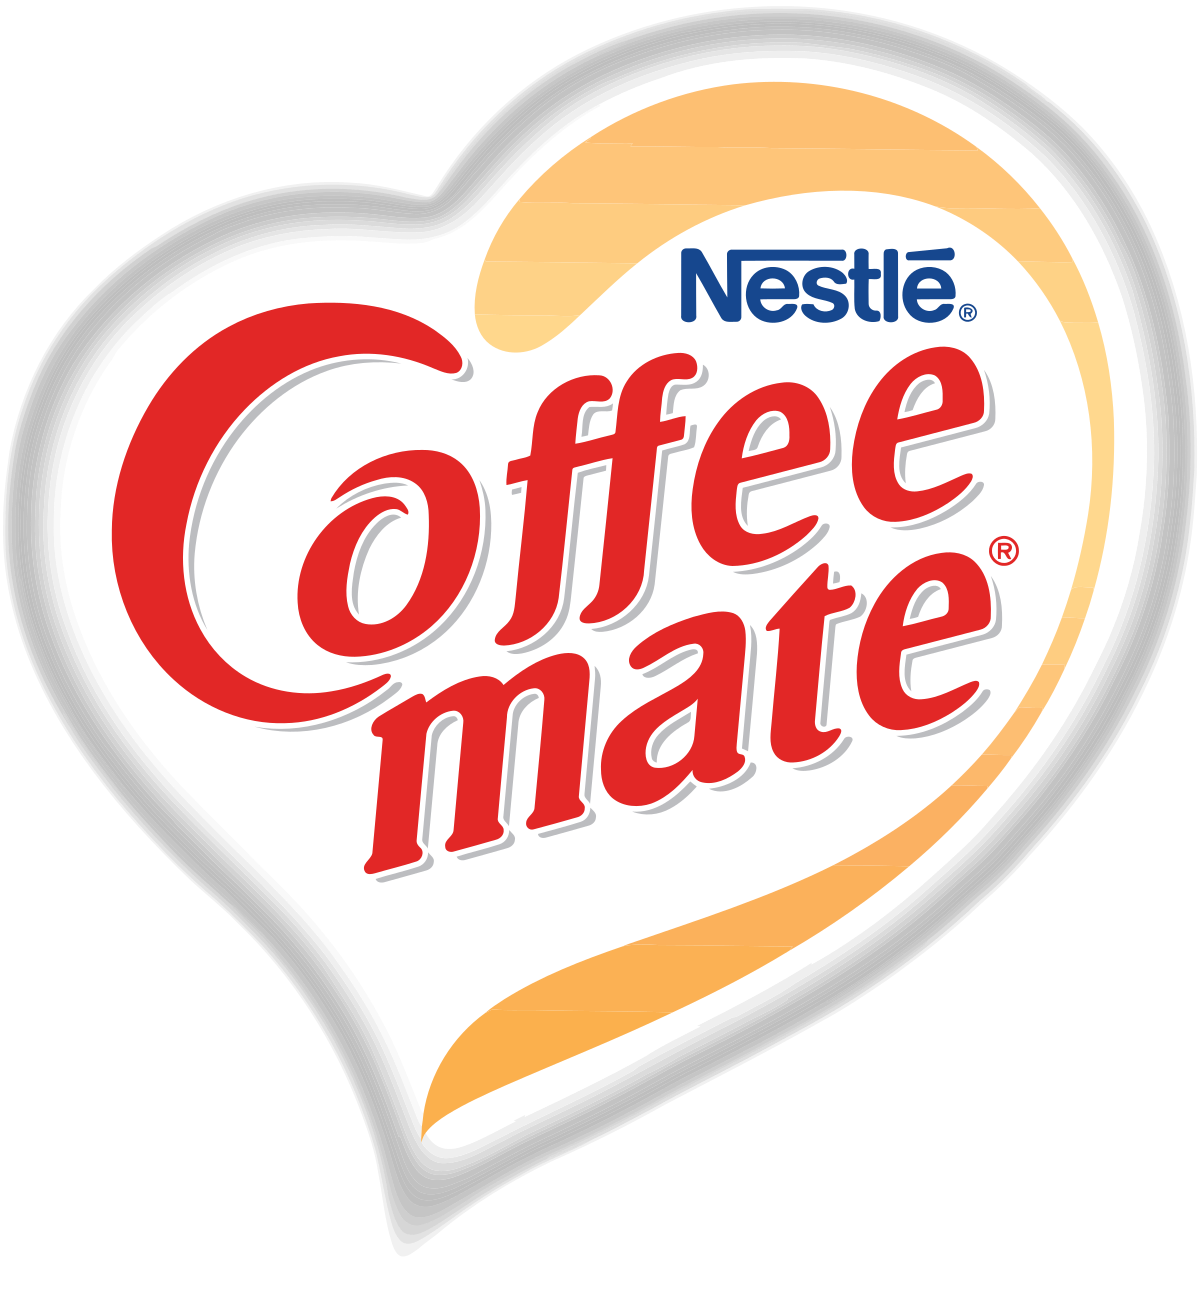 Coffee-Mate - Wikipedia